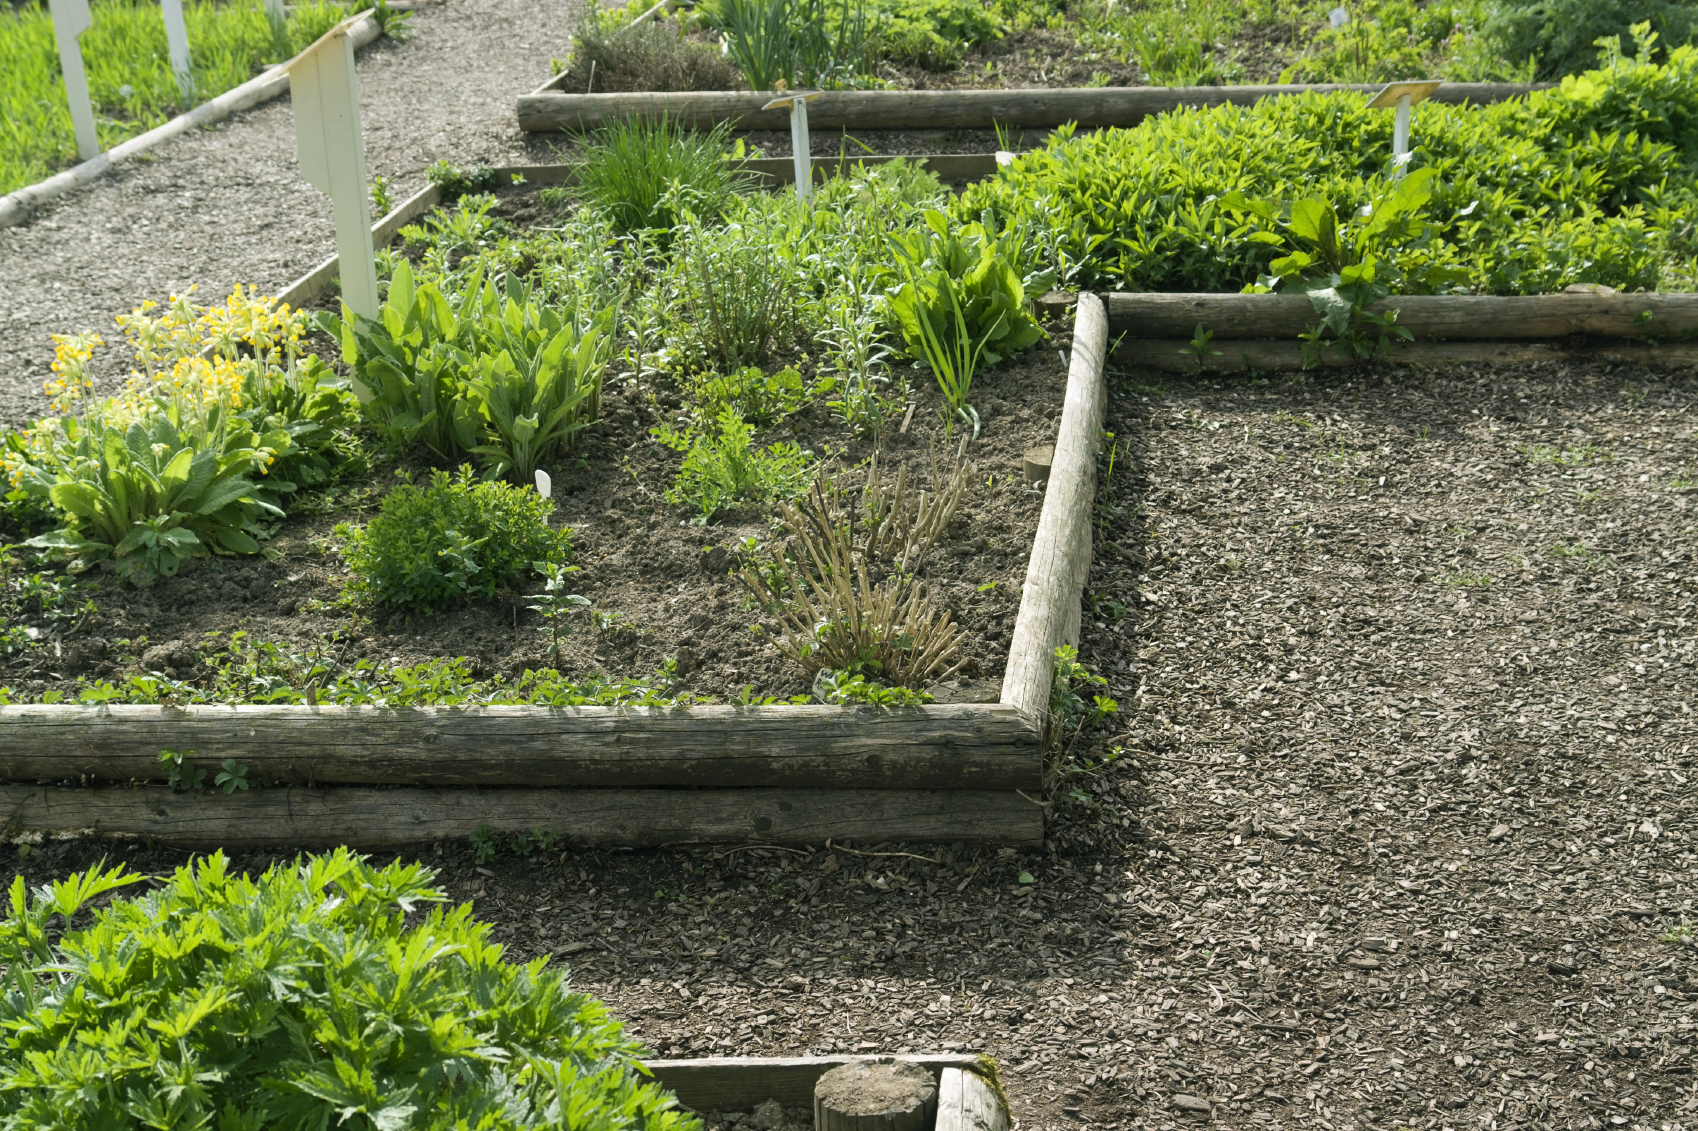 An herb garden can be grown in a food desert. (iStock)